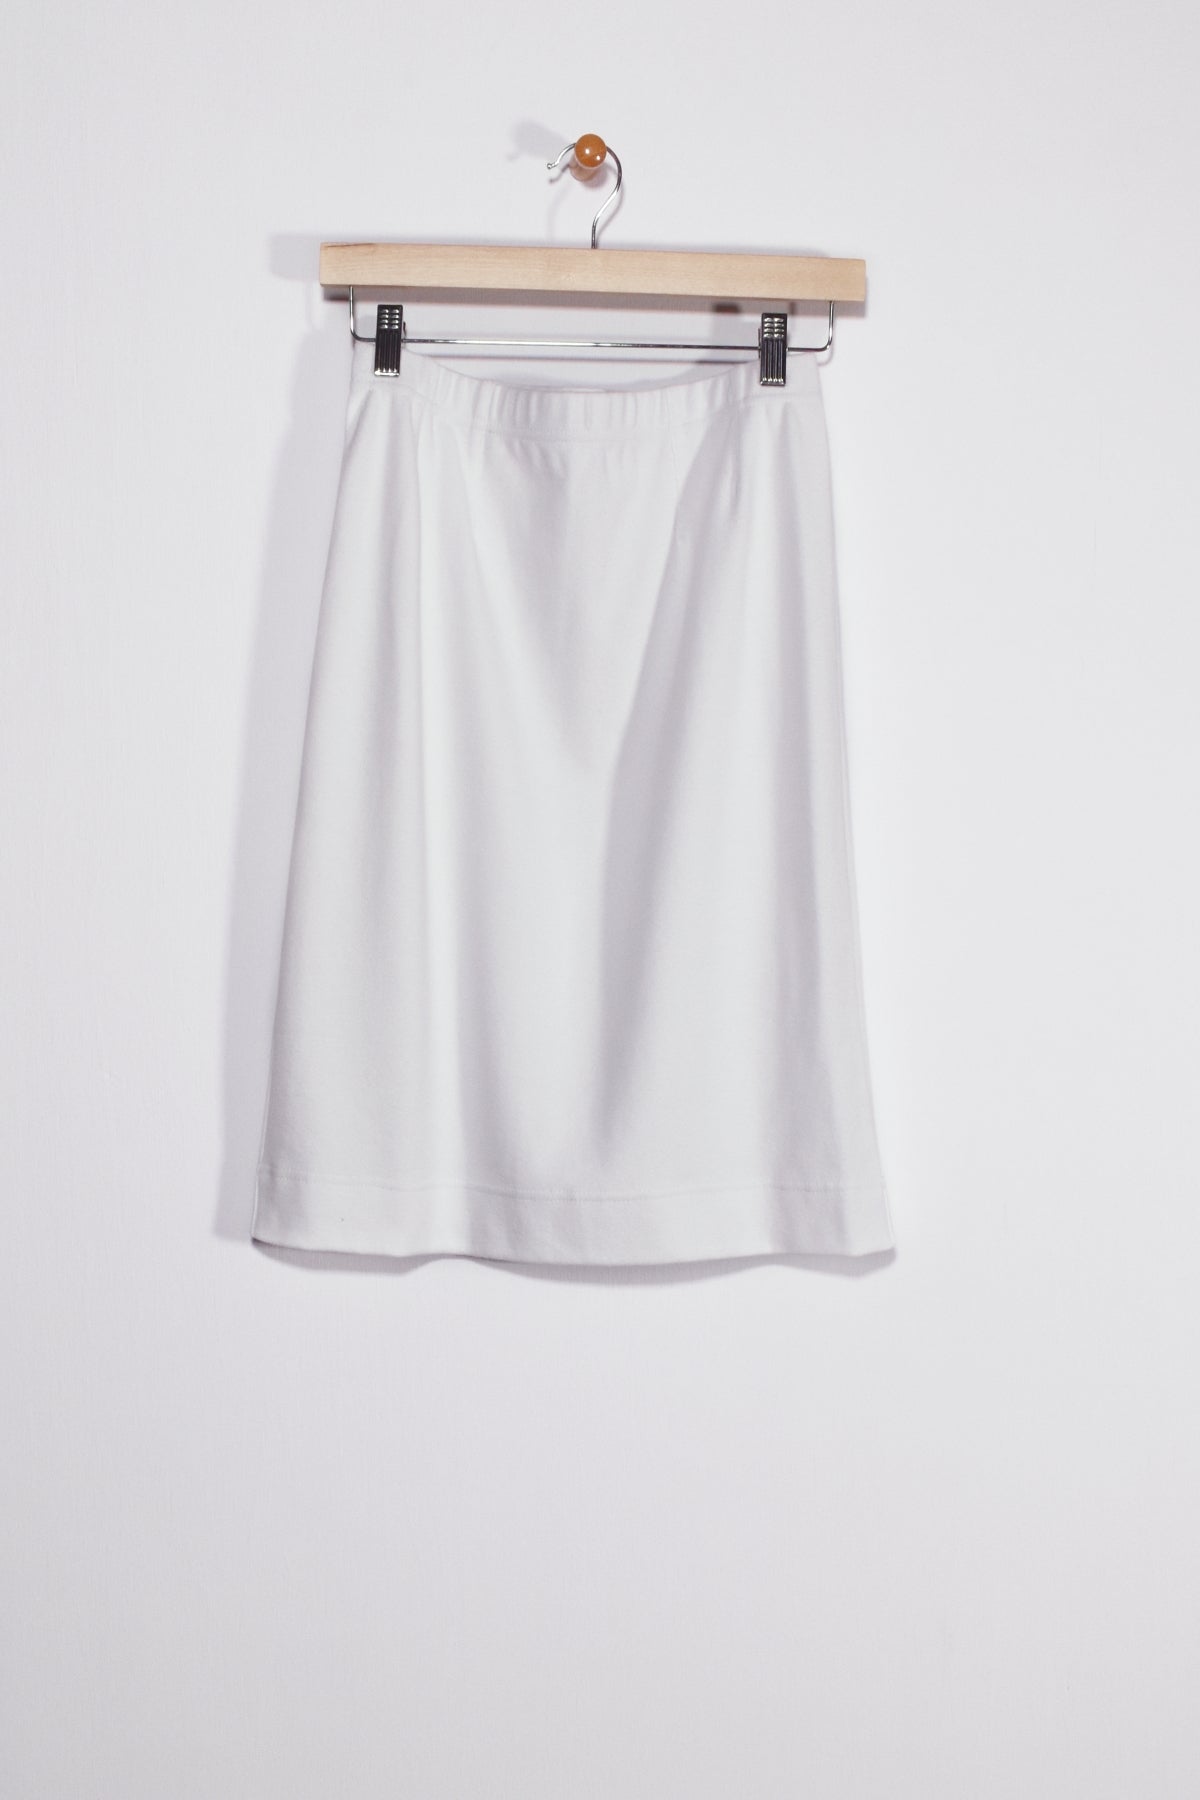 23” Short Skirt New Orleans Knitwear